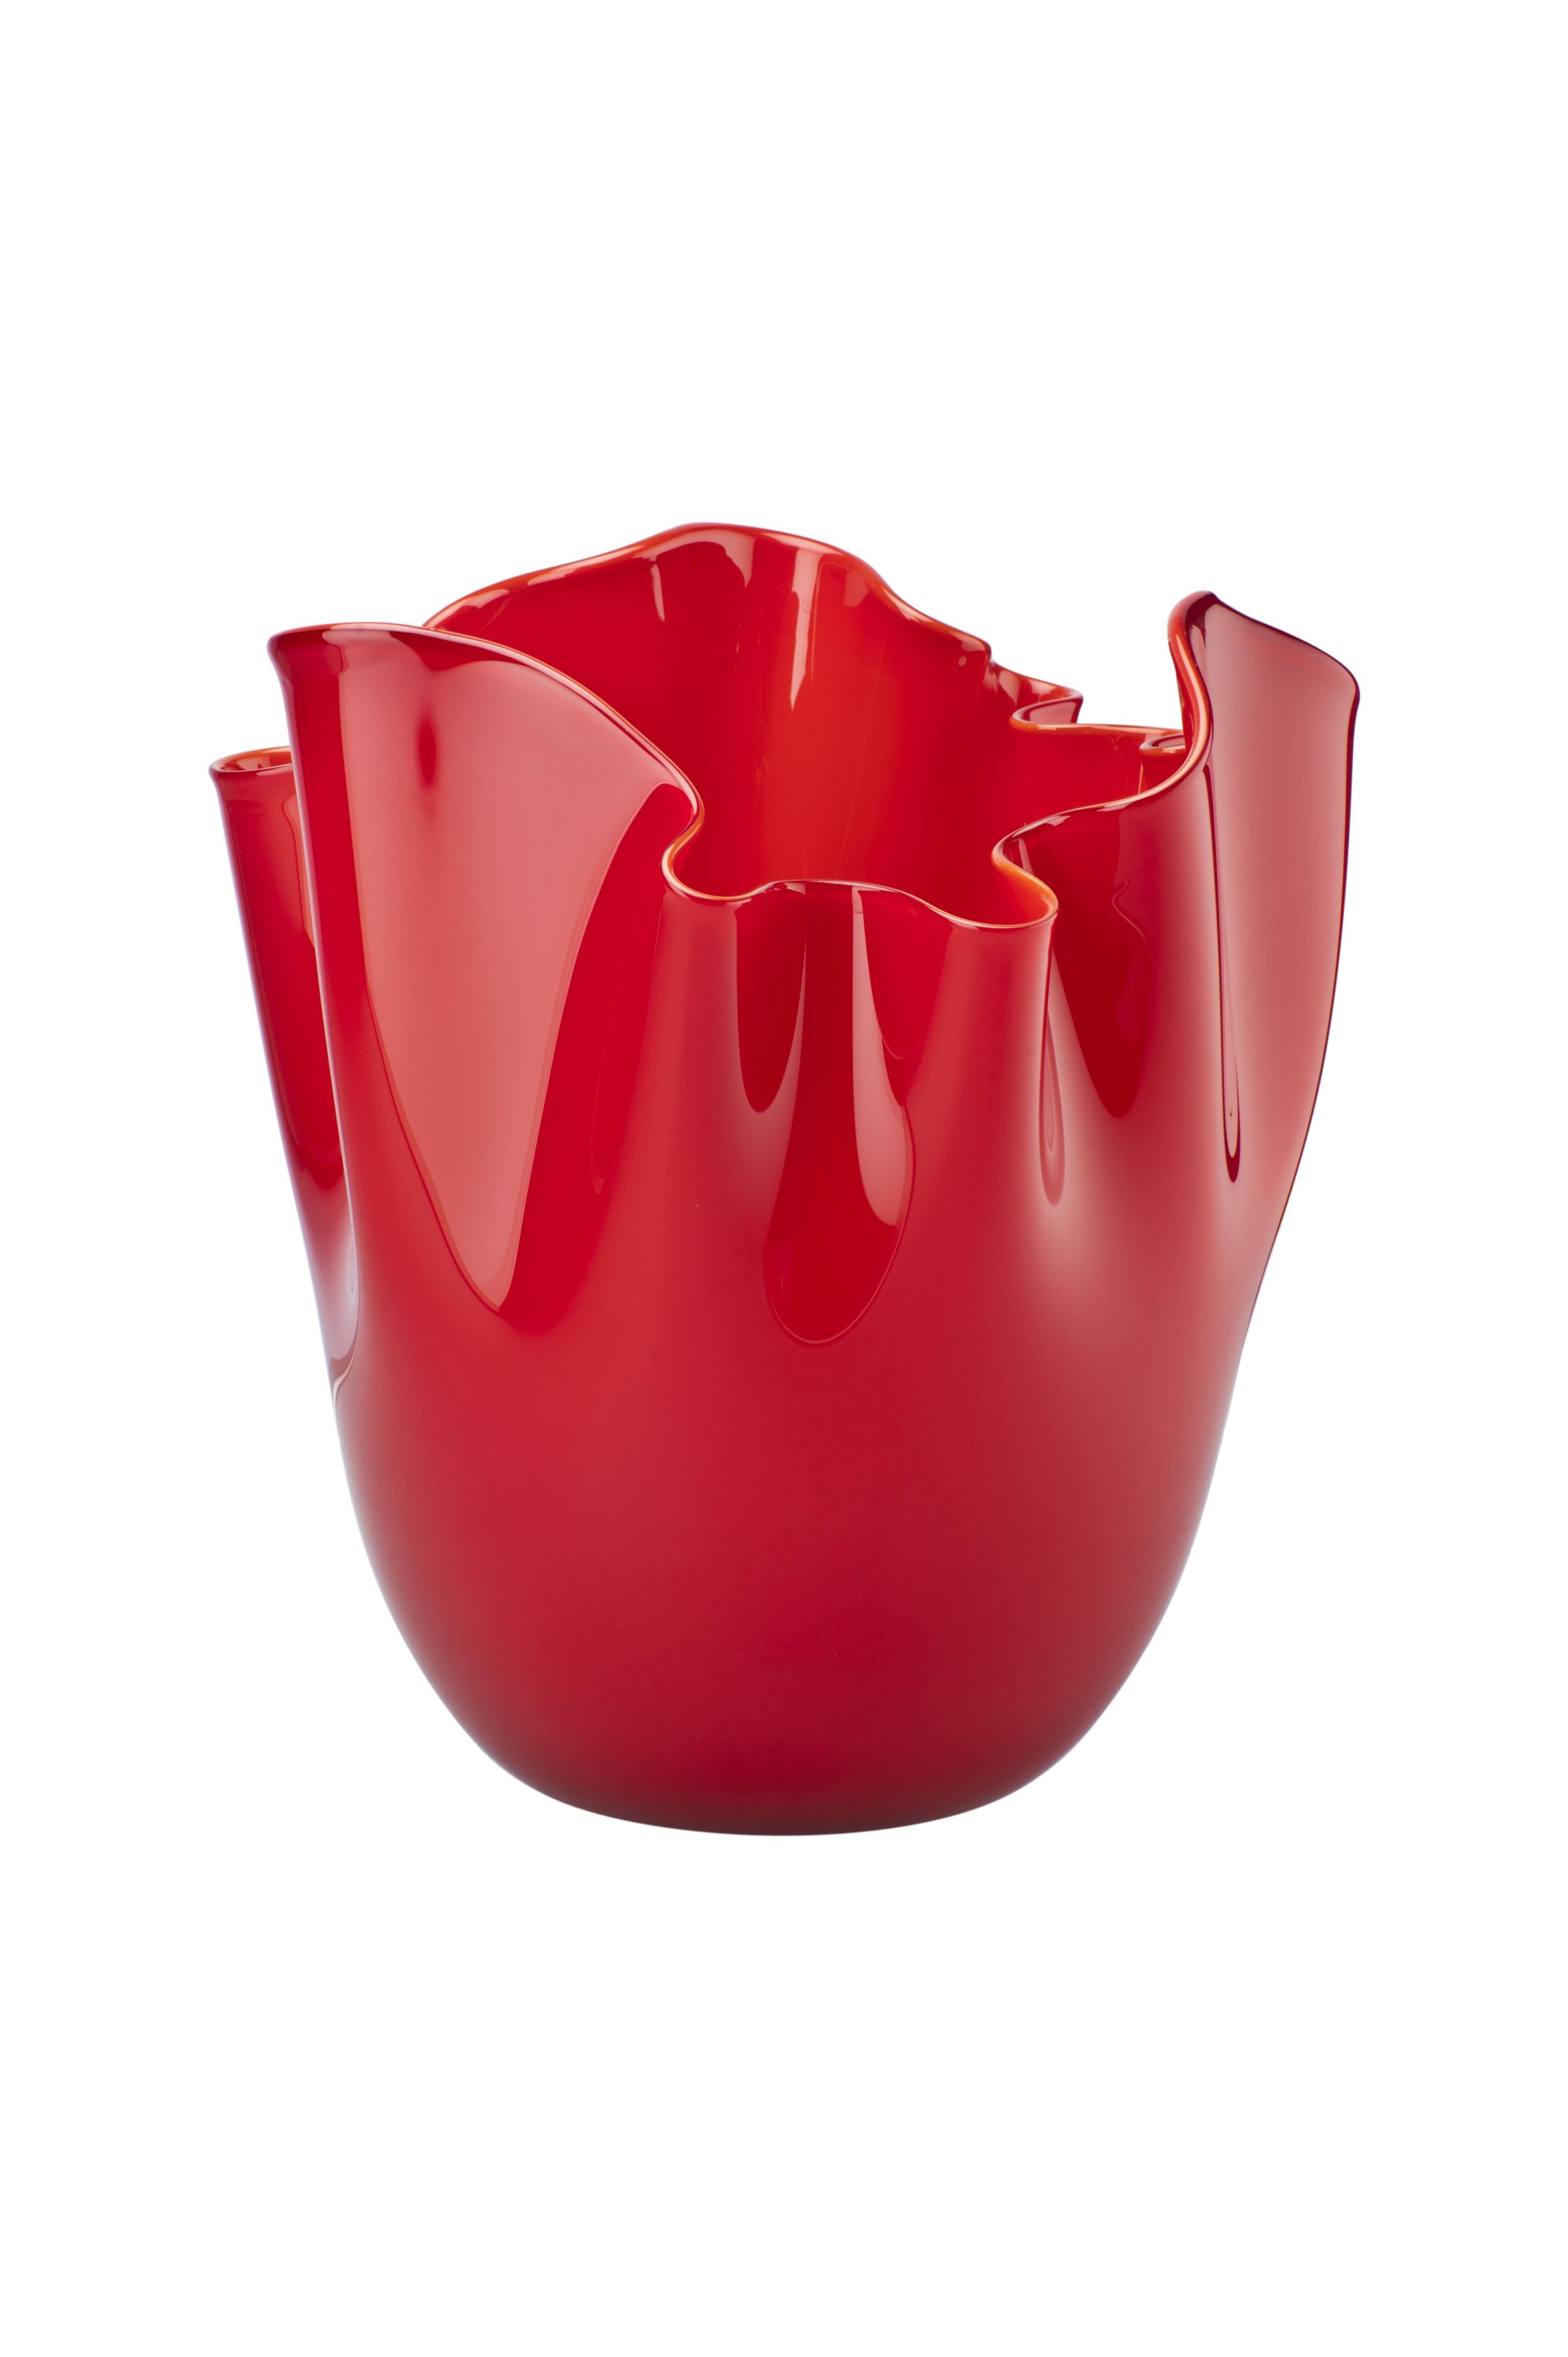 Venini Glasvase mit gekniffenem Rand in Rot, entworfen von Fulvio Bianconi und Paolo Venini im Jahr 1948. Perfekt für die Innendekoration als Gefäß, Videdeko oder Schmuckstück für jeden Raum. Auch in anderen Farben auf 1stdibs